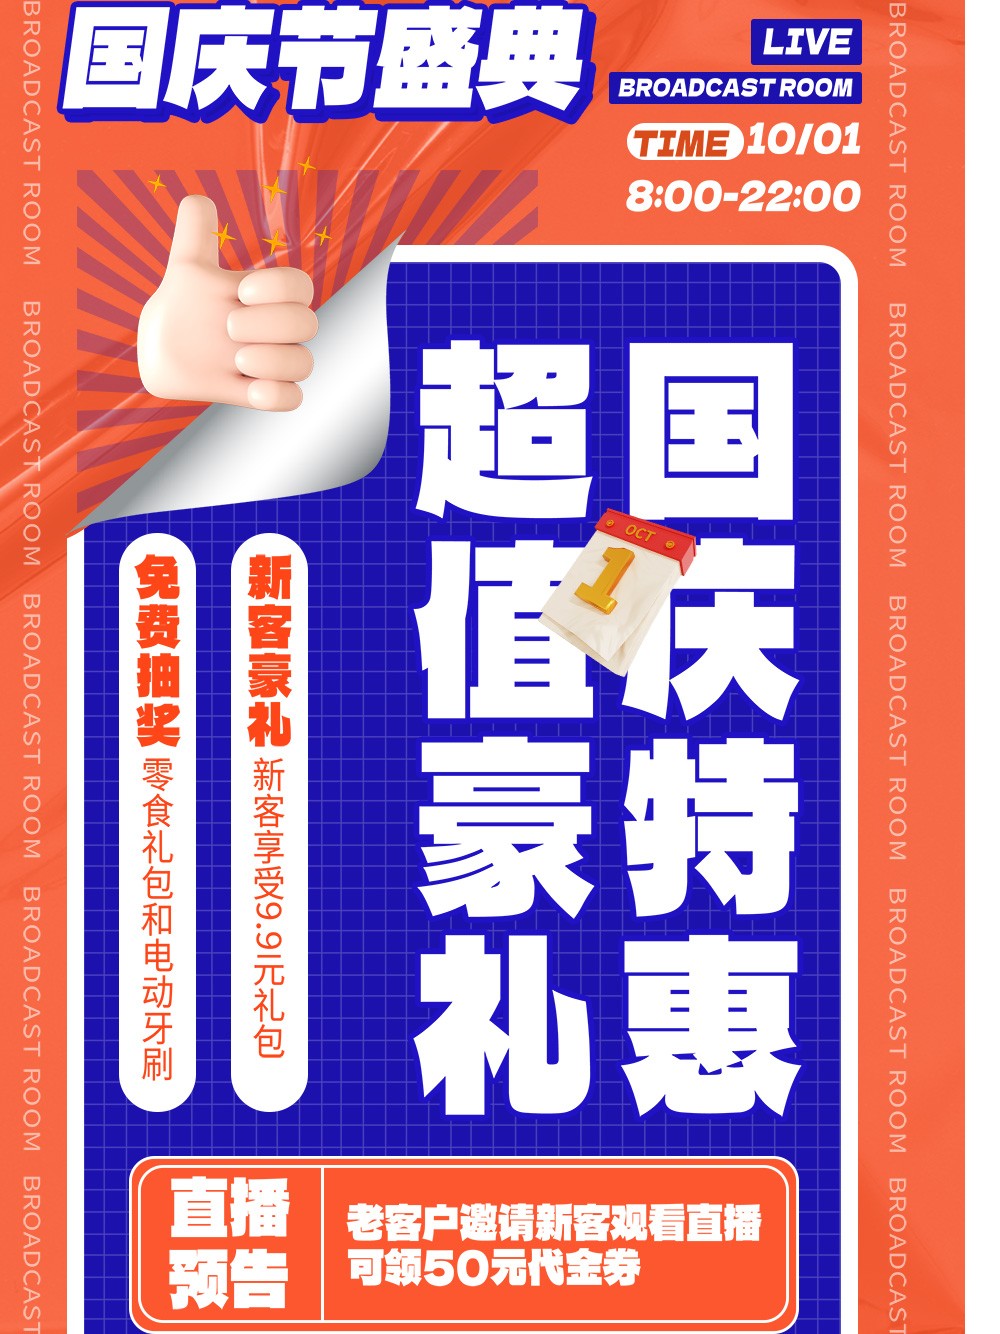 国庆节直播预告橙色蓝色海报